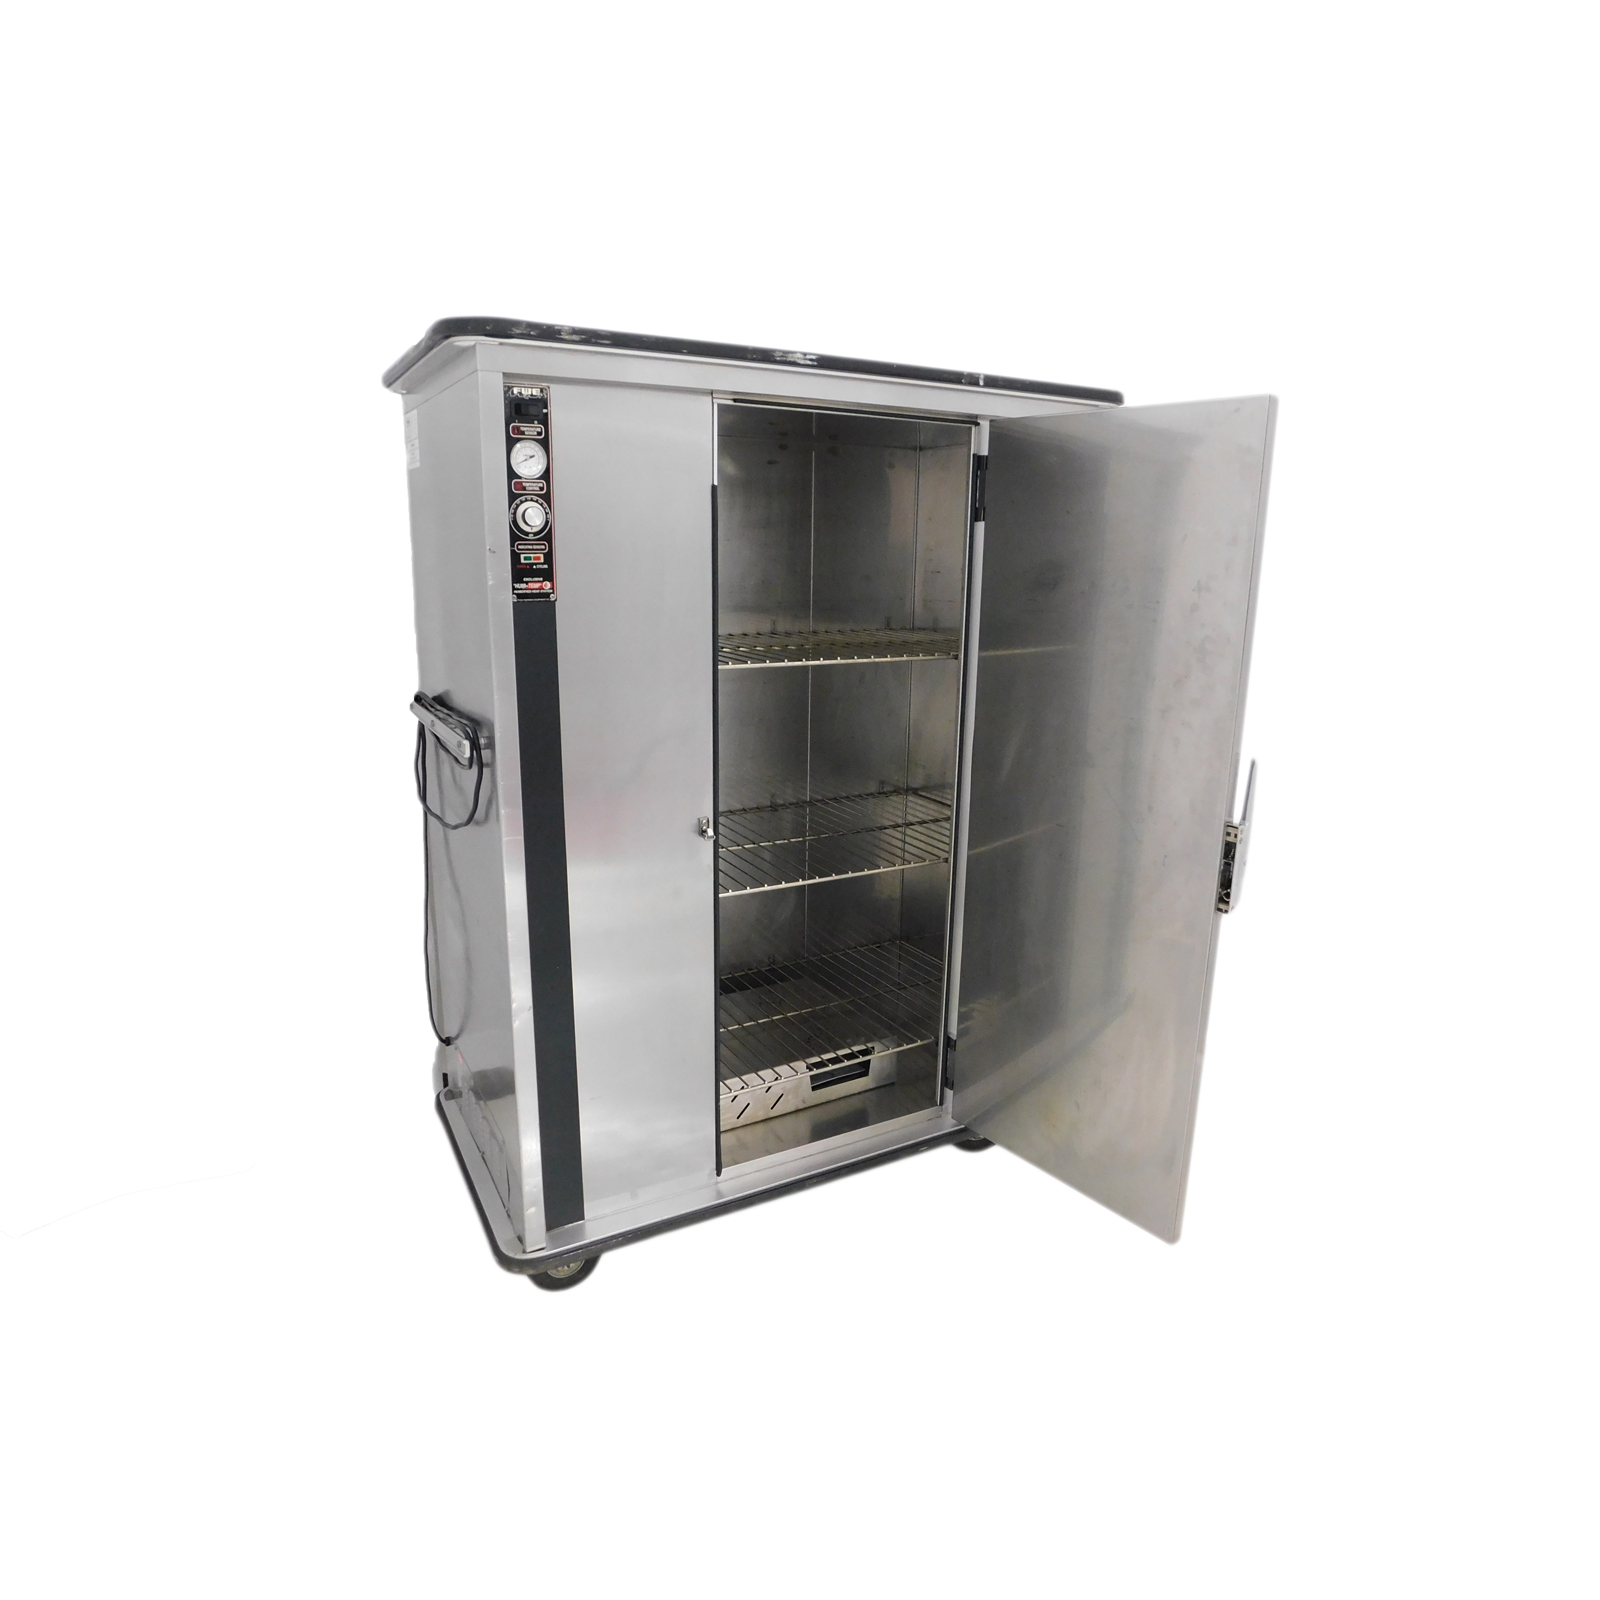 Food Warmer - Hot Box - Aabco Rents Inc